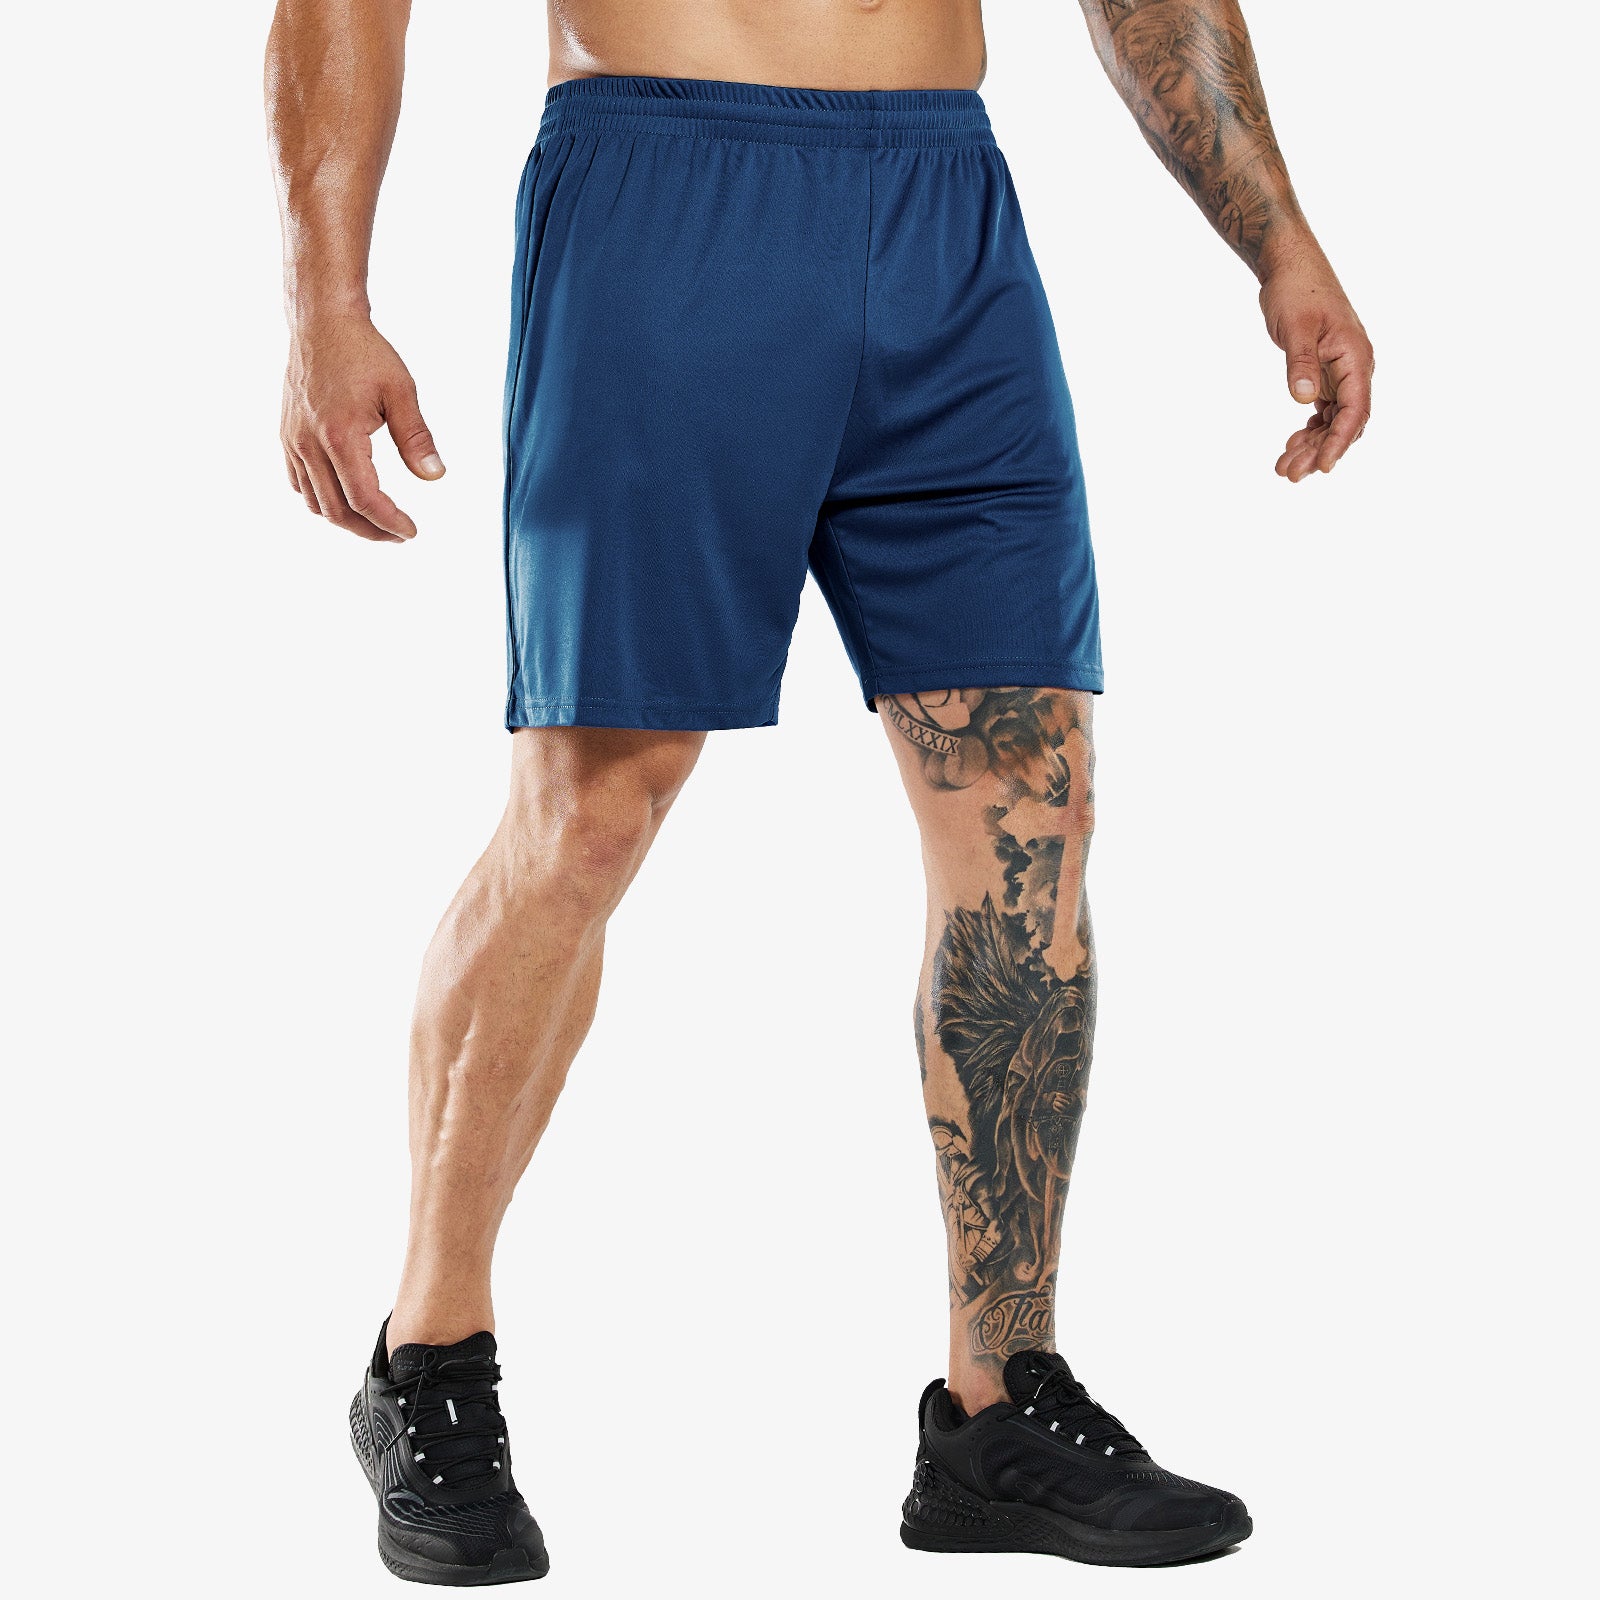 Pantalones cortos deportivos de secado rápido para hombre sin bolsillos